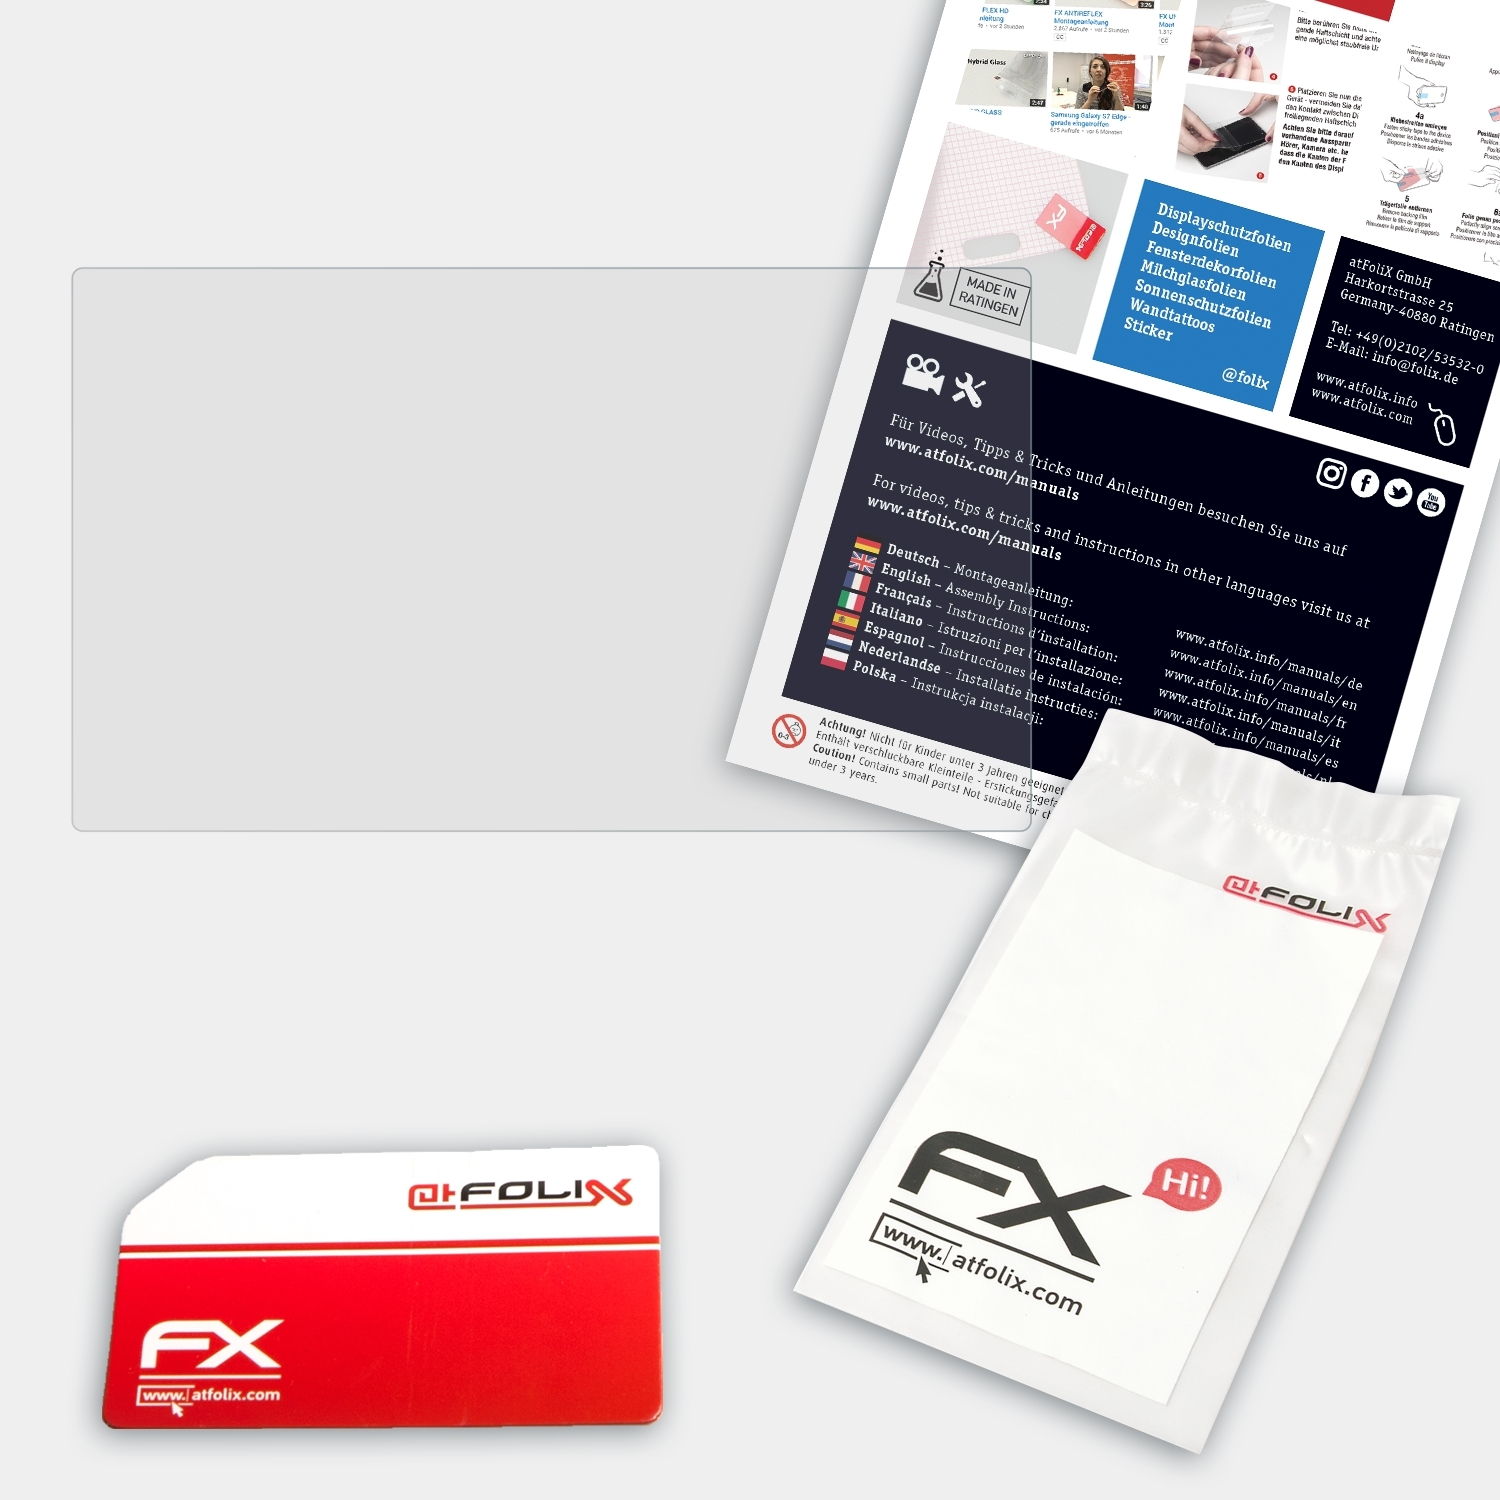 ATFOLIX FX-Hybrid-Glass Schutzglas(für Archos (A70GP)) GamePad